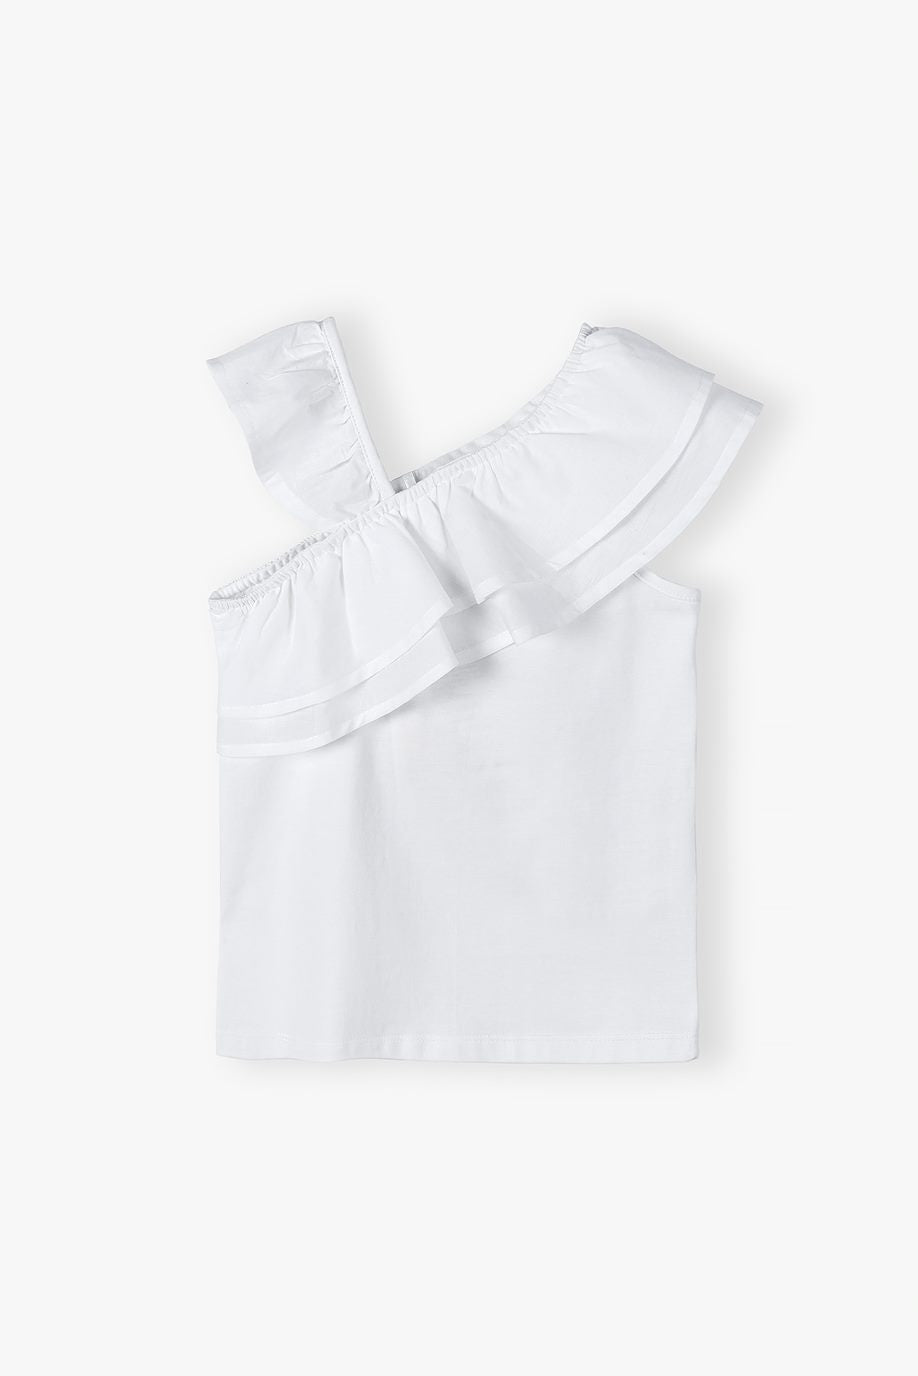 White blouse for little girls